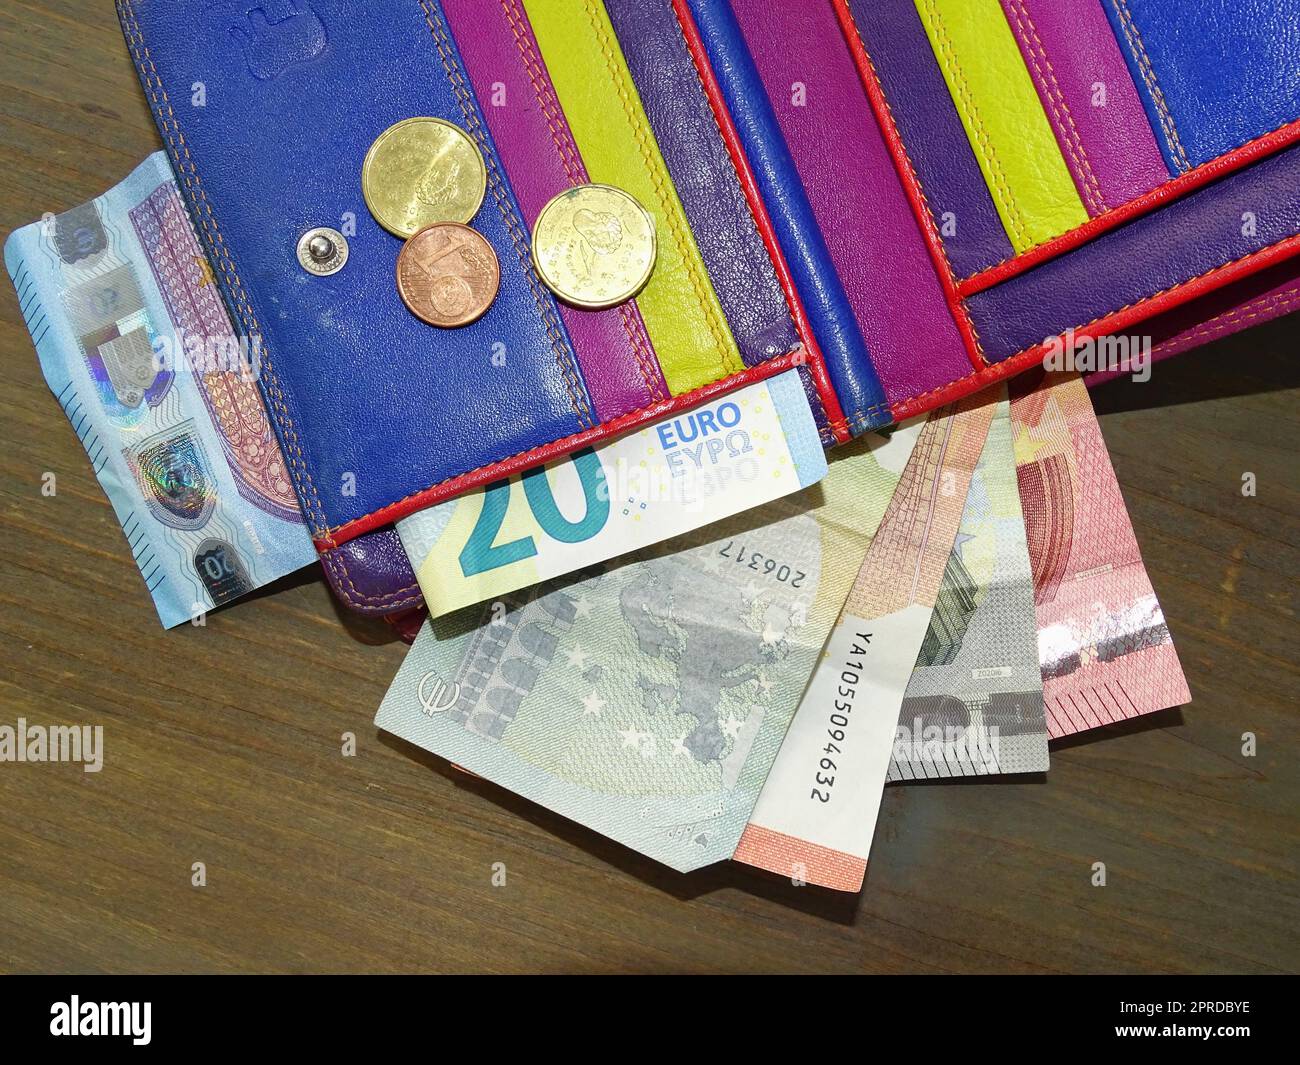 Billets et trois pièces en euros dans un portefeuille en cuir coloré sur une table Banque D'Images